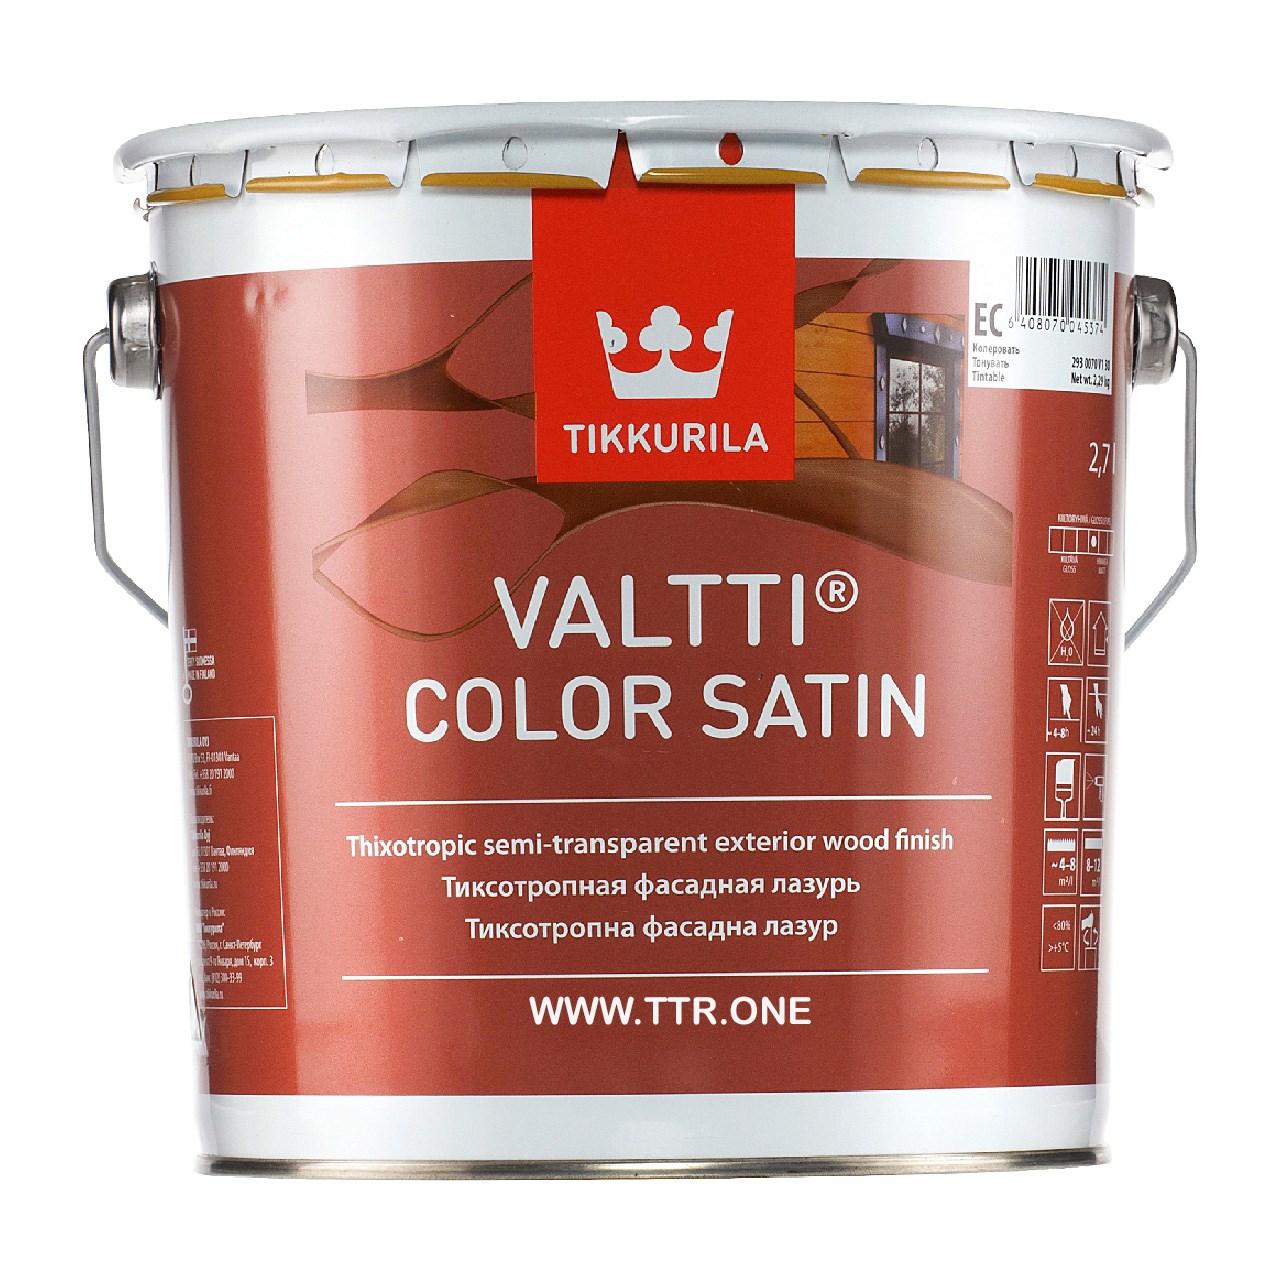 رنگ پایه روغن تیکوریلا مدل Valtti Color Satin 5072 حجم 3 لیتر